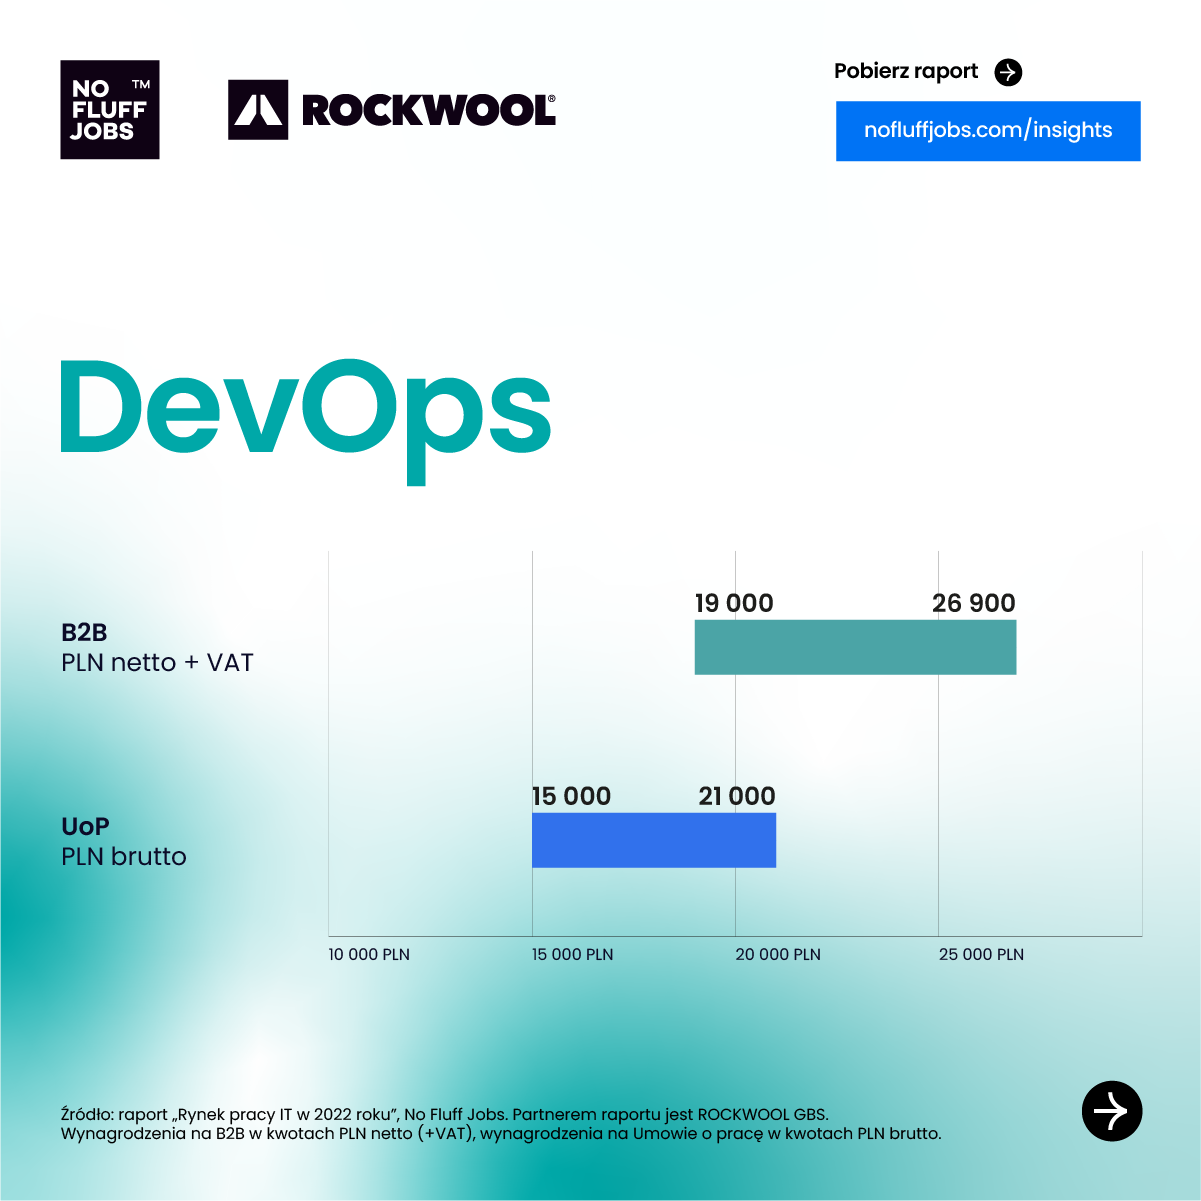 Ile zarabia programista?Na pewno mniej niż DevOps - to od lat jedna z najlepiej opłacanych kategorii w IT. W 2022 roku trafiła na szczyt rankingu